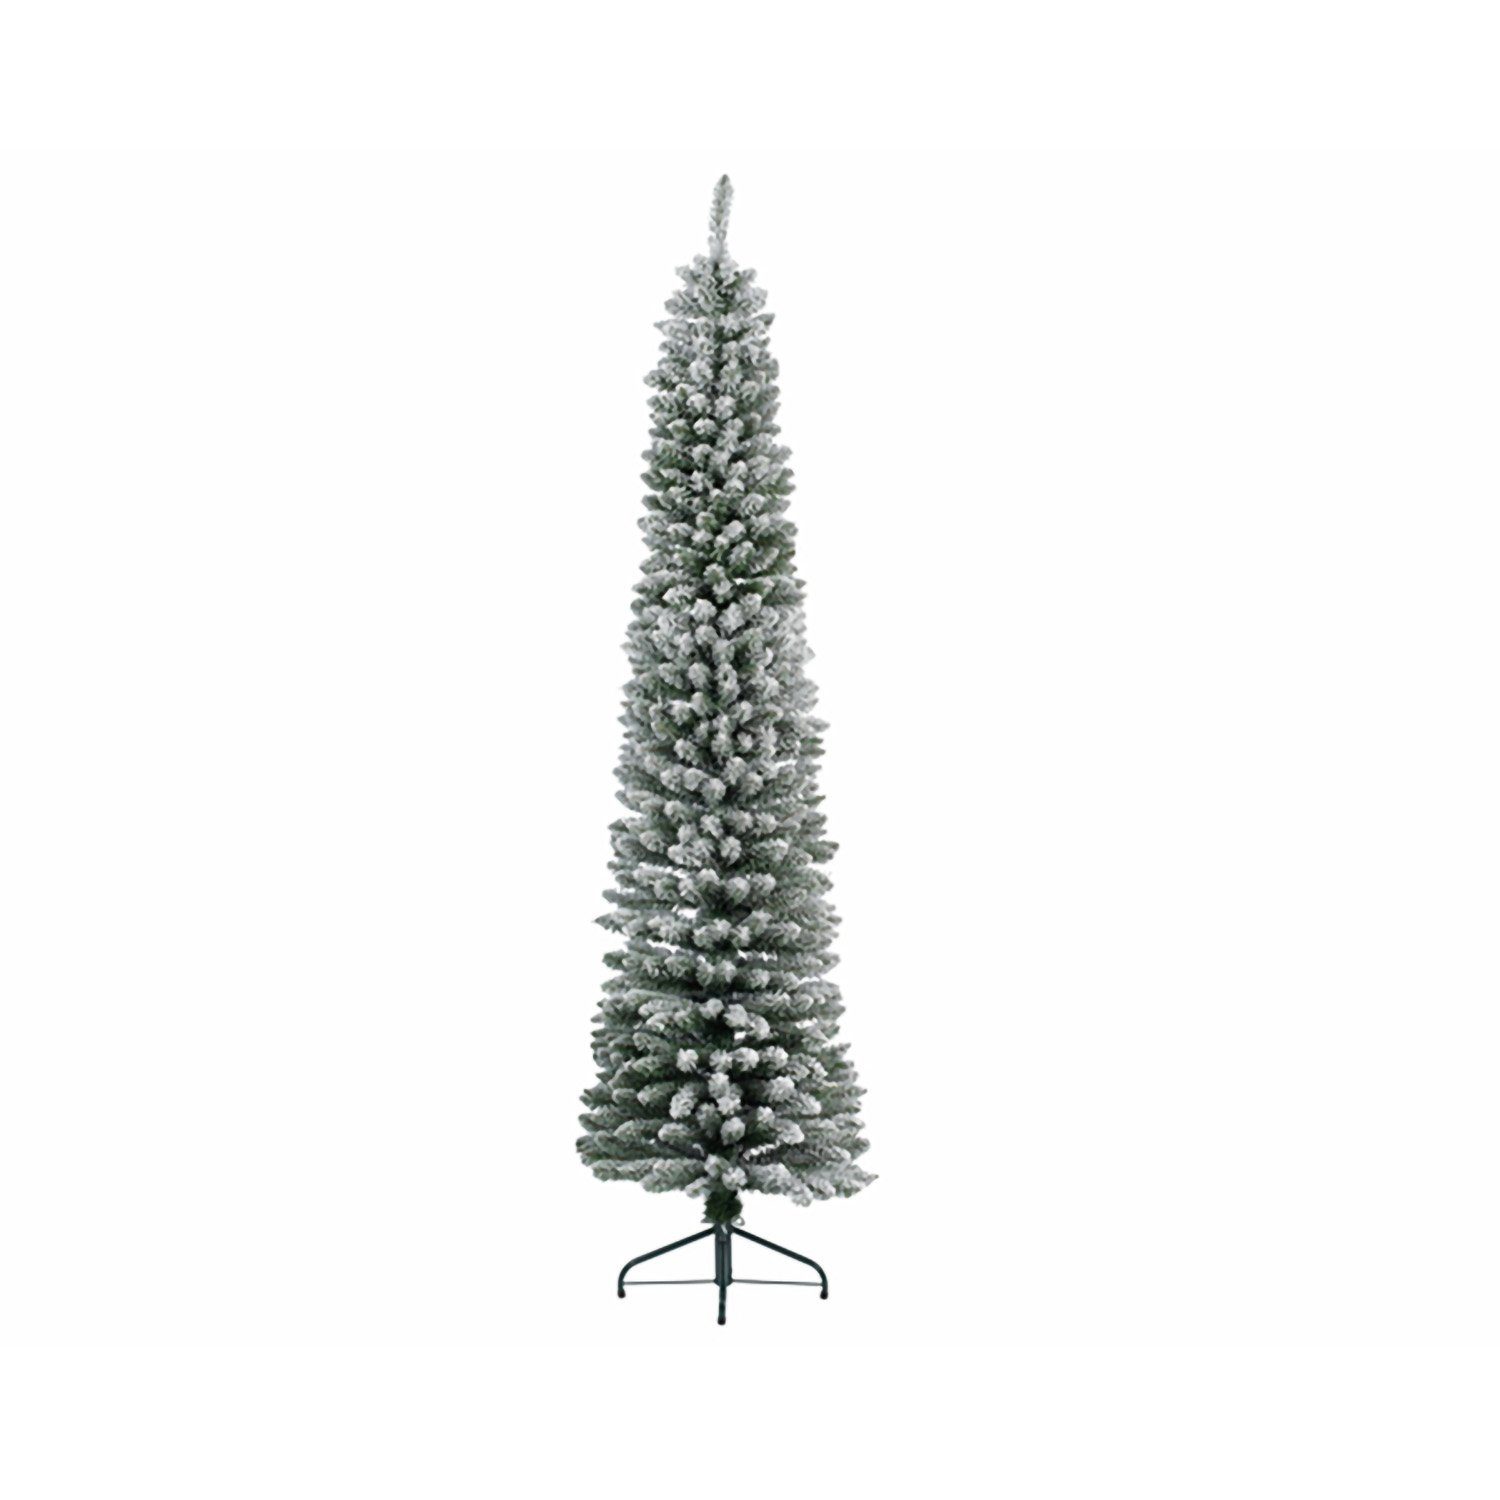 GILDE Künstlicher Weihnachtsbaum GILDE Deko Tannebaum beschneit - grün-weiß - H. 180cm x D. 50cm